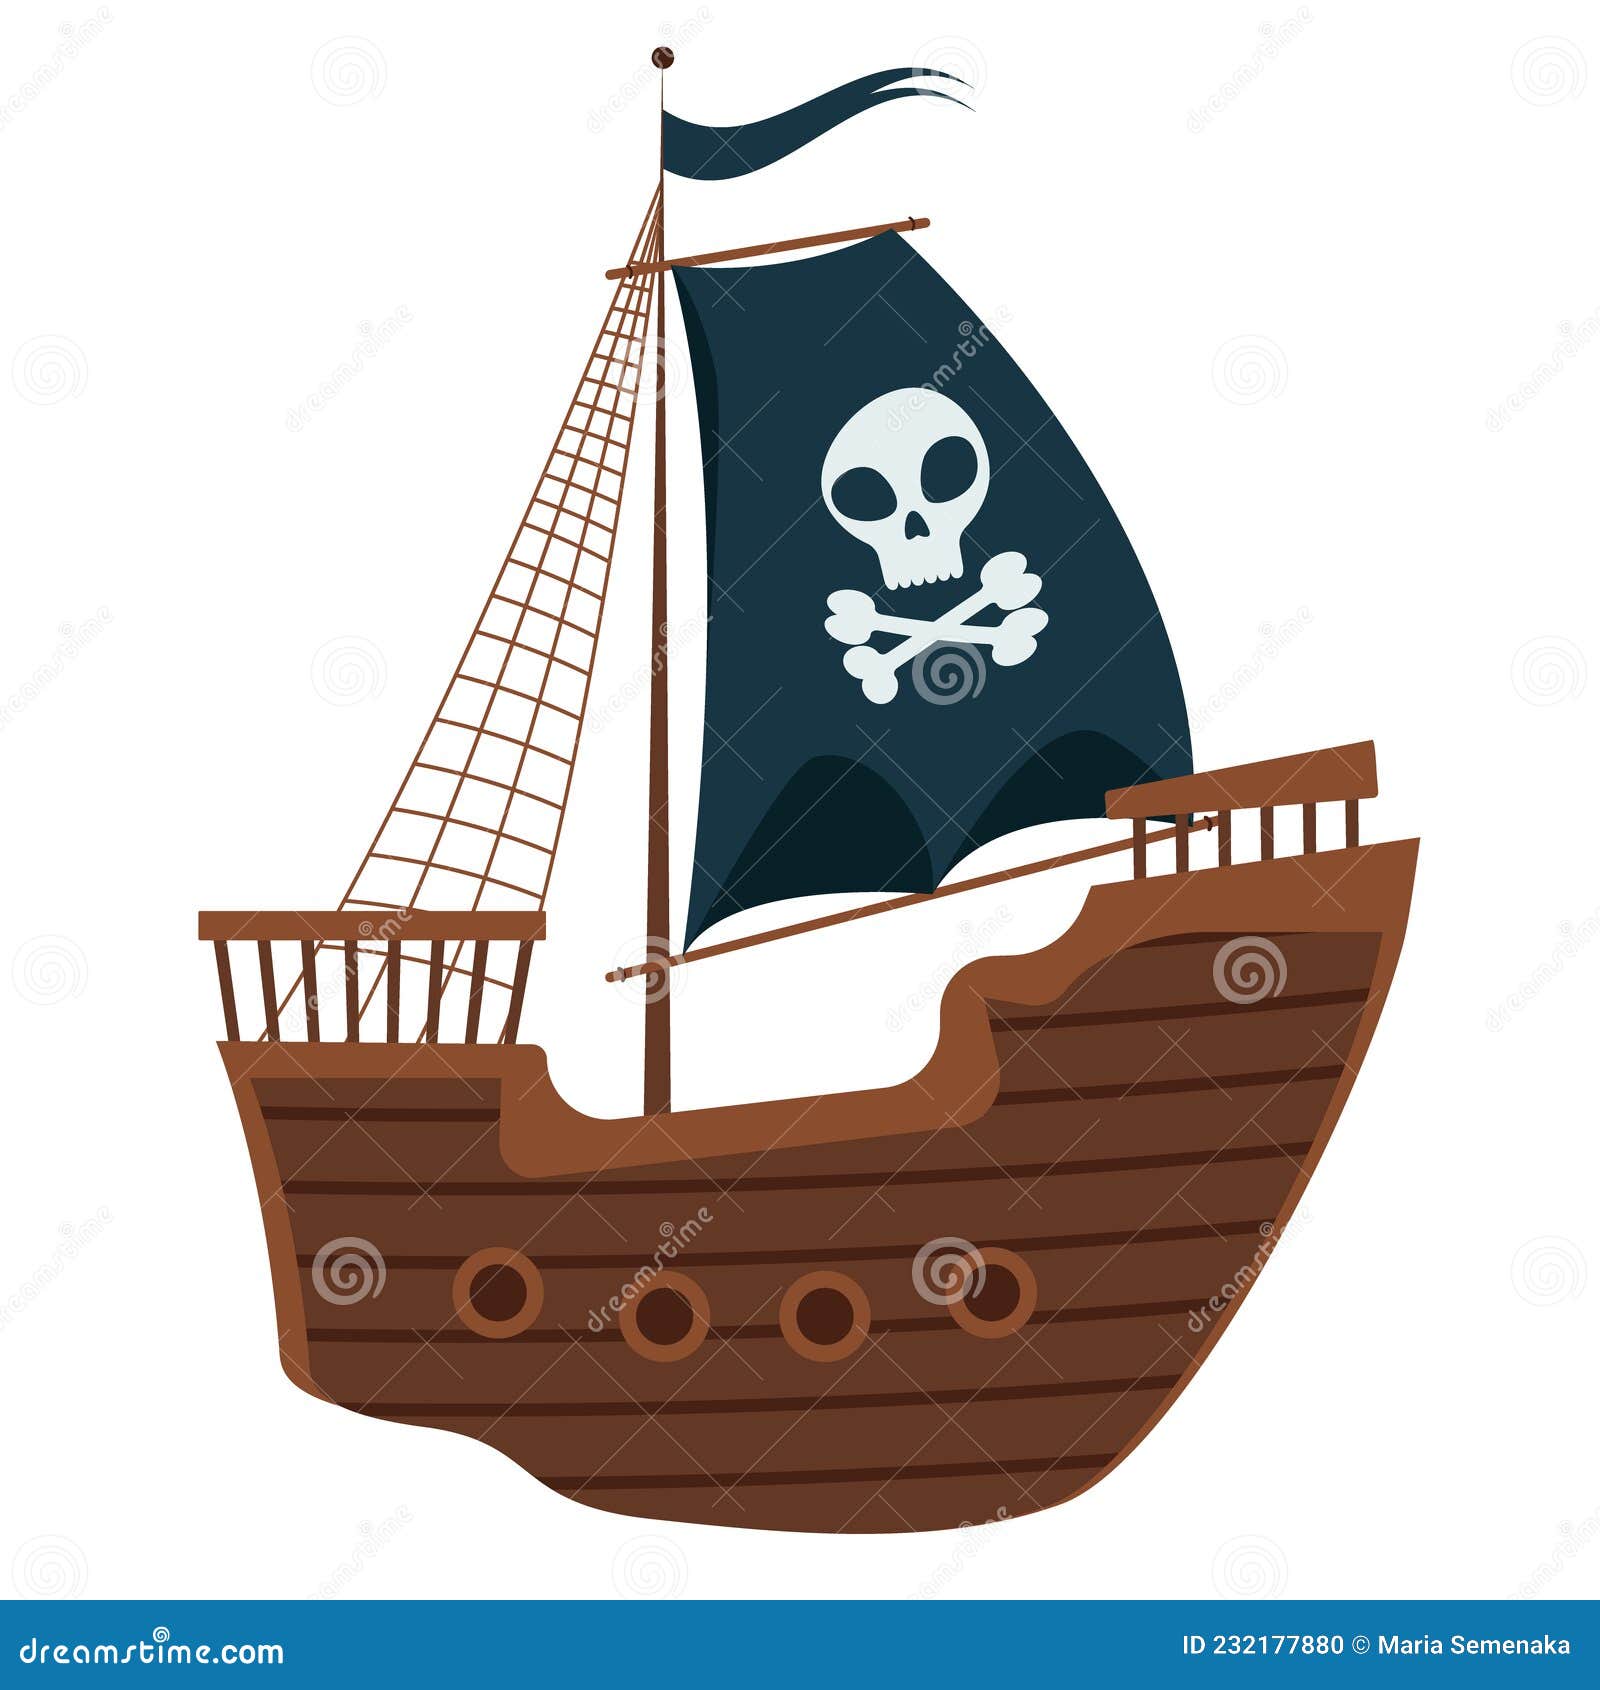 bateau pirate avec voiles noires, godille et os croisés et drapeau